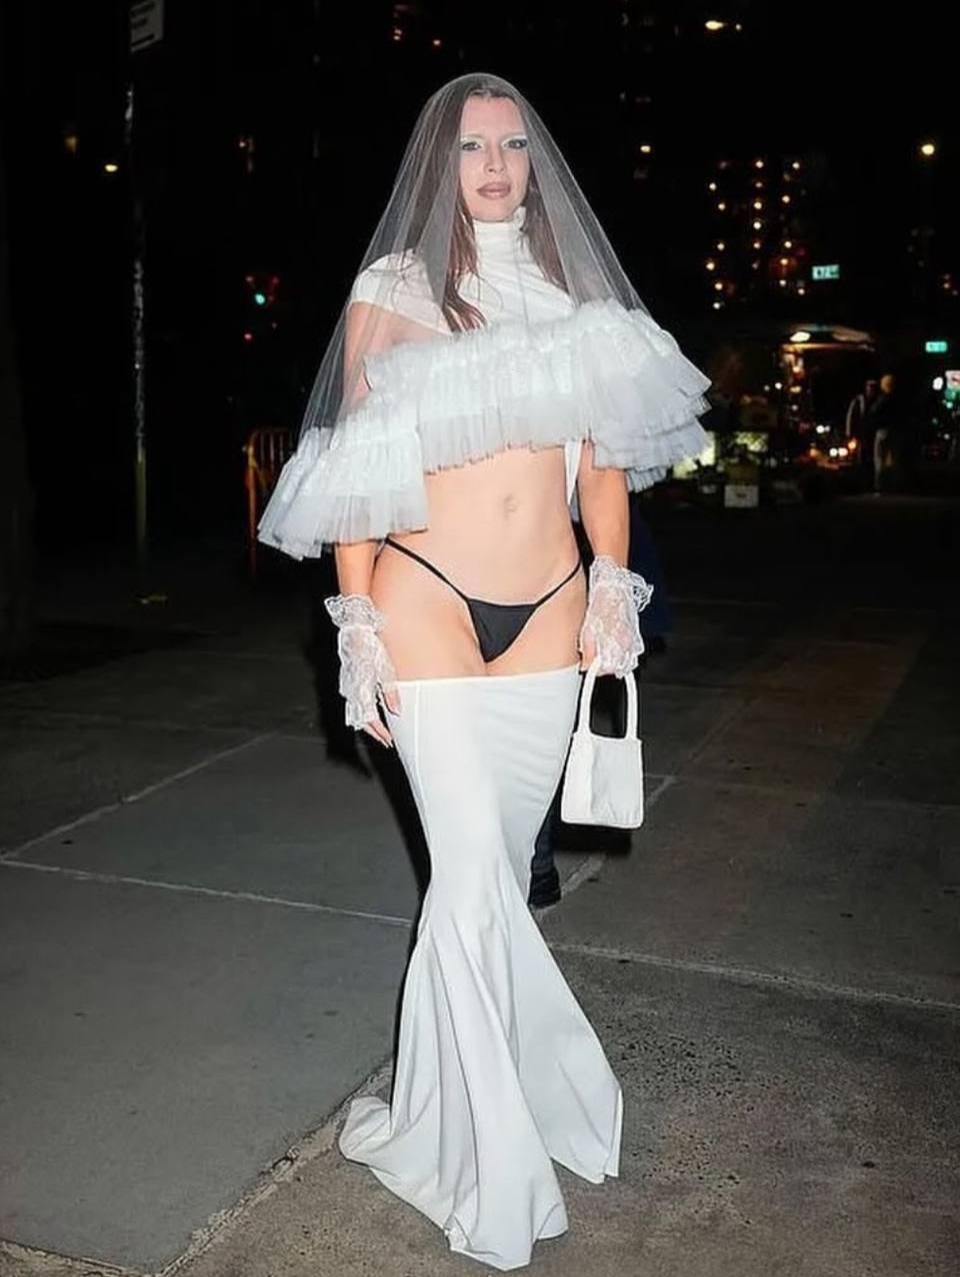 Джулия Фокс поразила всех своим появлением в платье невесты